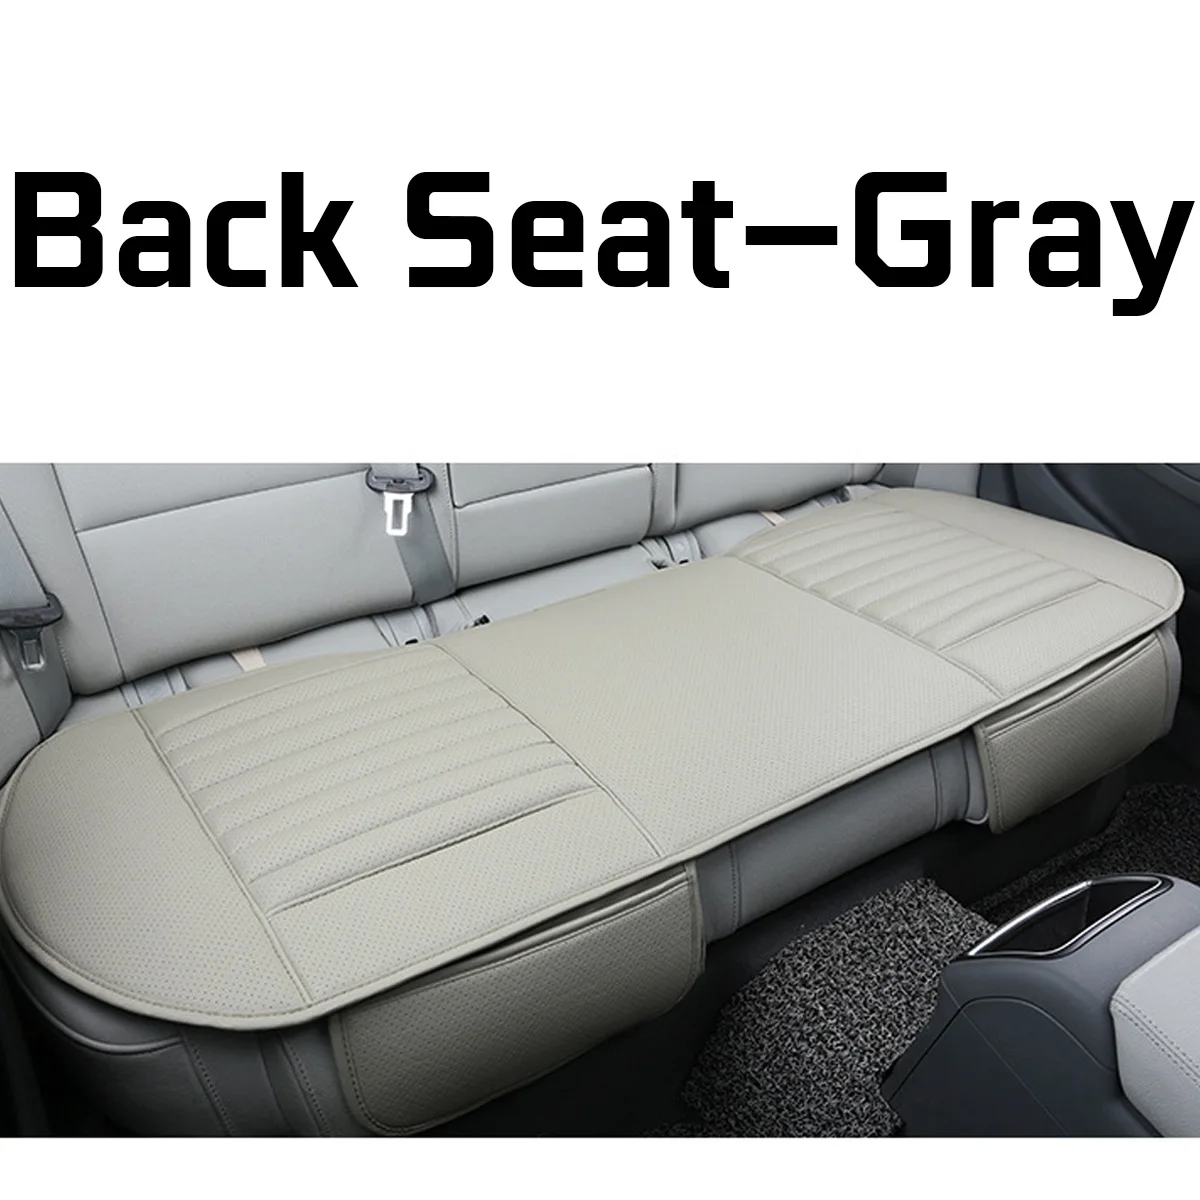 Универсальный чехол для сиденья автомобиля четыре сезона искусственная кожа передняя задняя подушка дышащий протектор коврик для авто аксессуары автомобиля - Название цвета: Back Seat Gray